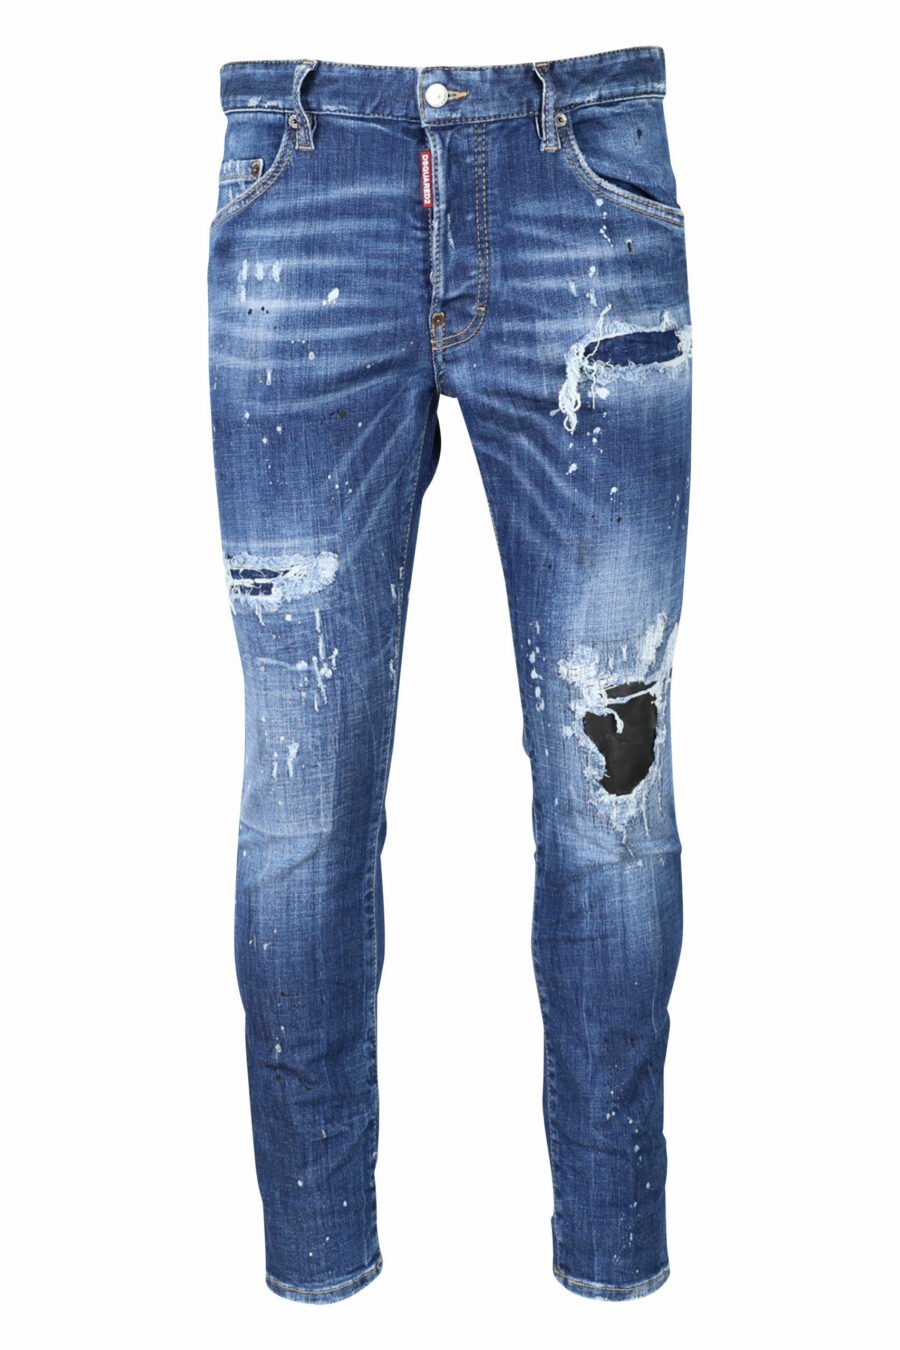 Calças de ganga "super twinkey jean" azuis desgastadas com rasgões pretos - 8054148124328 scaled